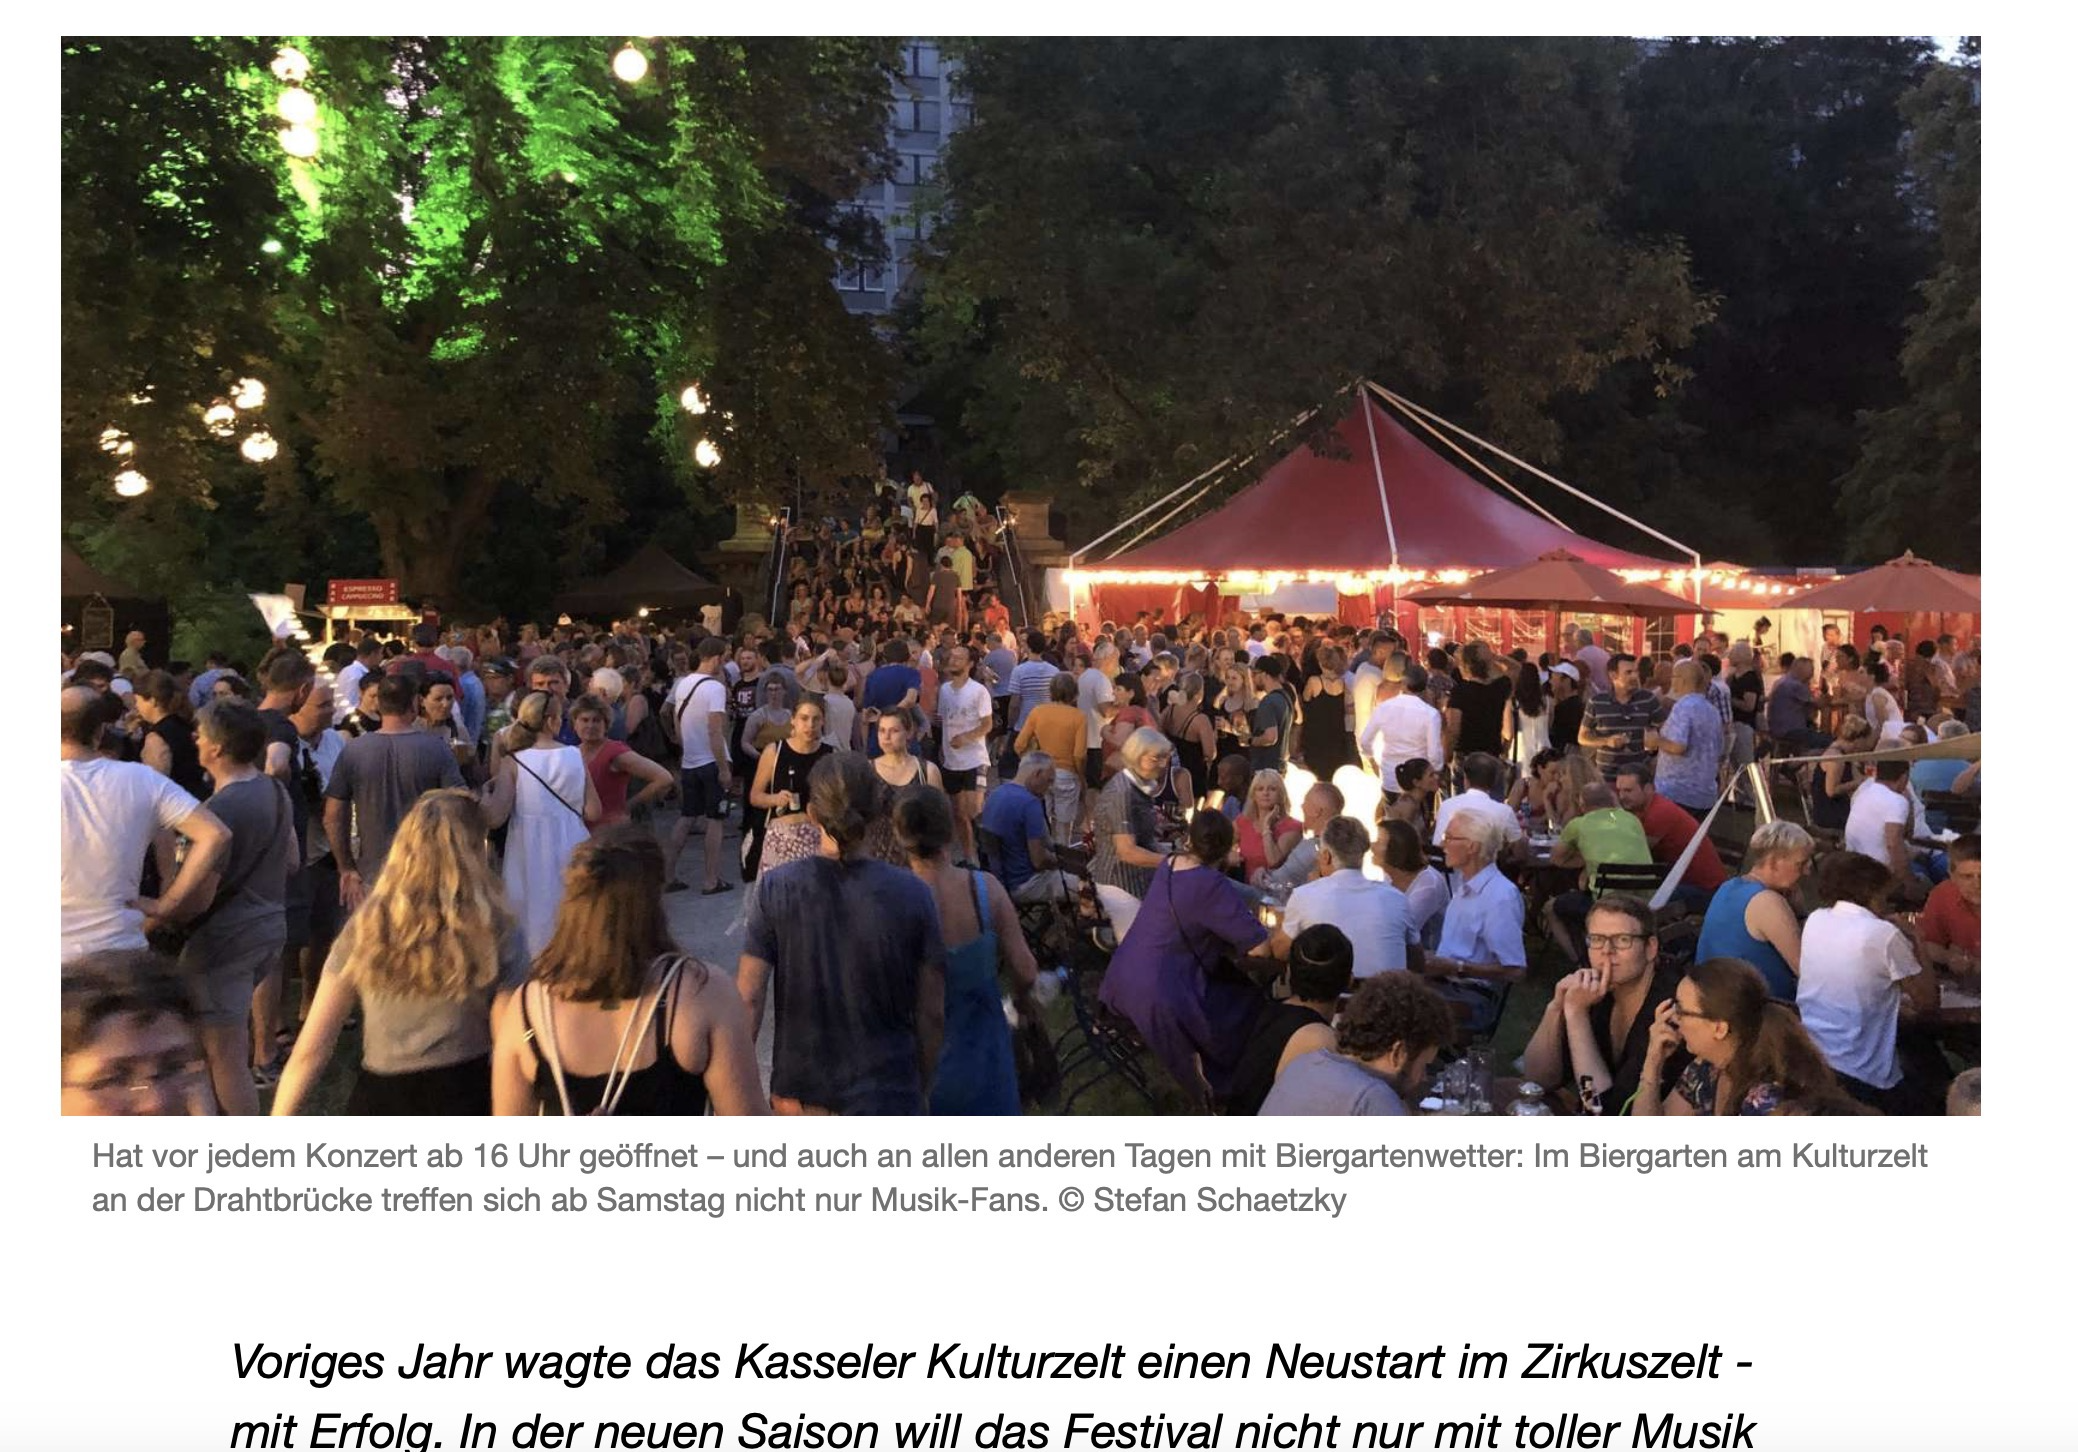 Kulturzelt in Kassel: Darum freuen wir uns auf die neue Festival-Saison